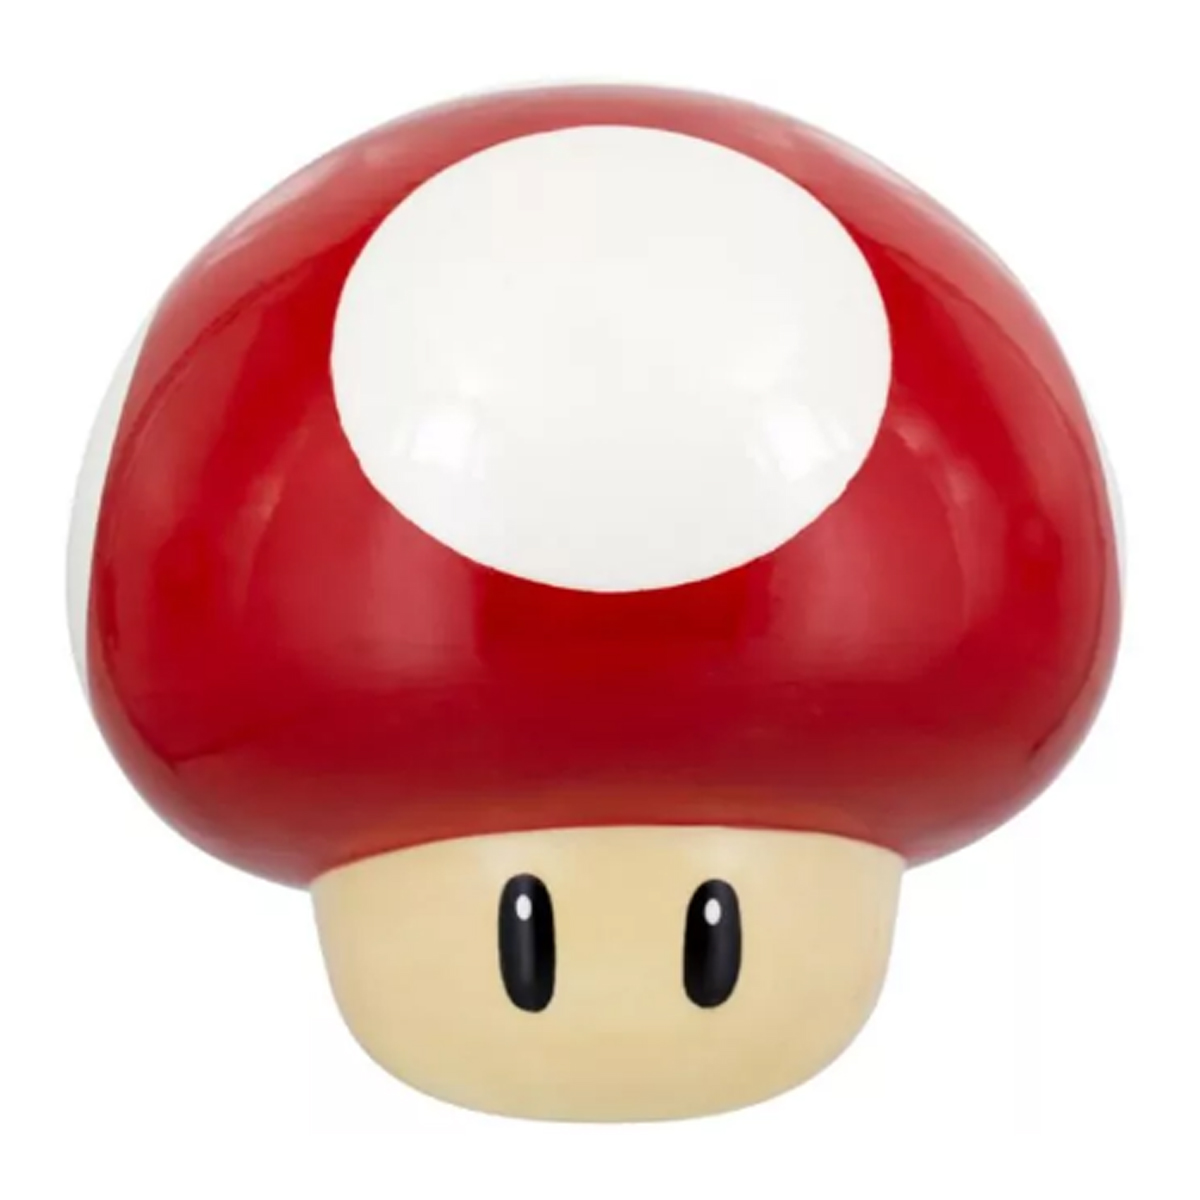 Super Mario Mushroom Cookie Jar